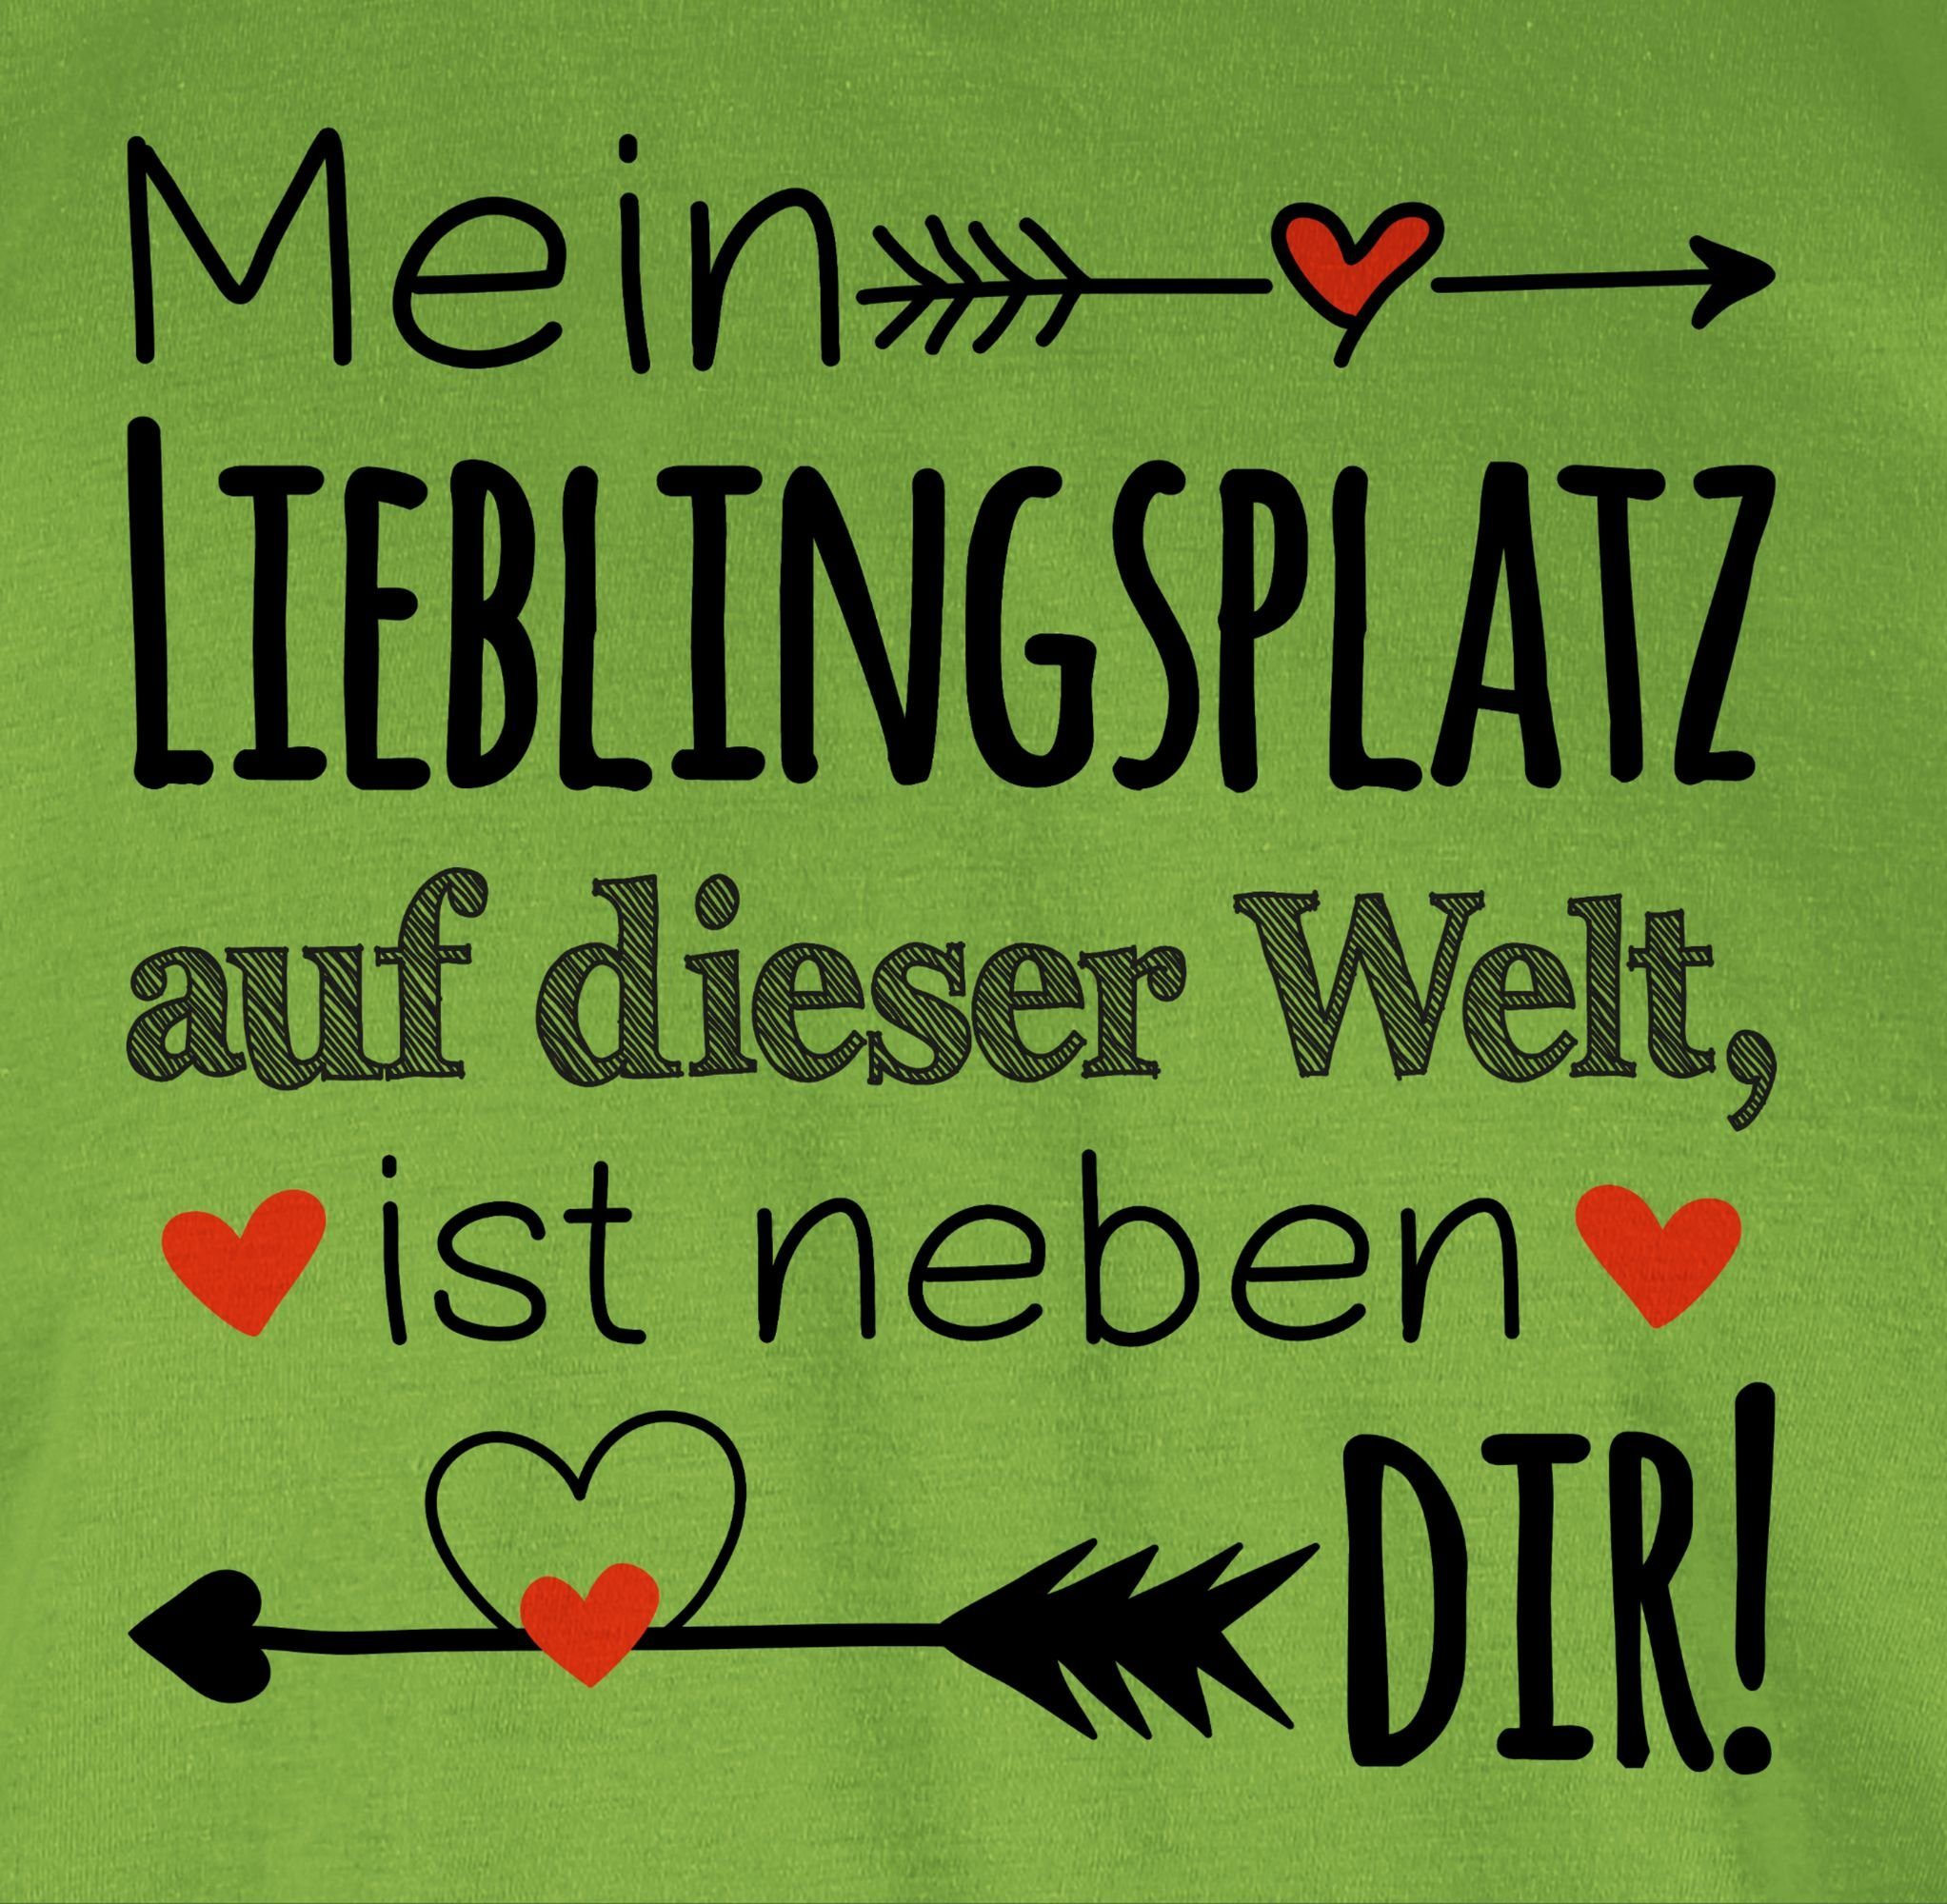 Shirtracer T-Shirt Lieblingsplatz - Geschenk Partner Hellgrün Liebe Partner Beziehung Liebeserklärung Partnerin 3 Valentinstag